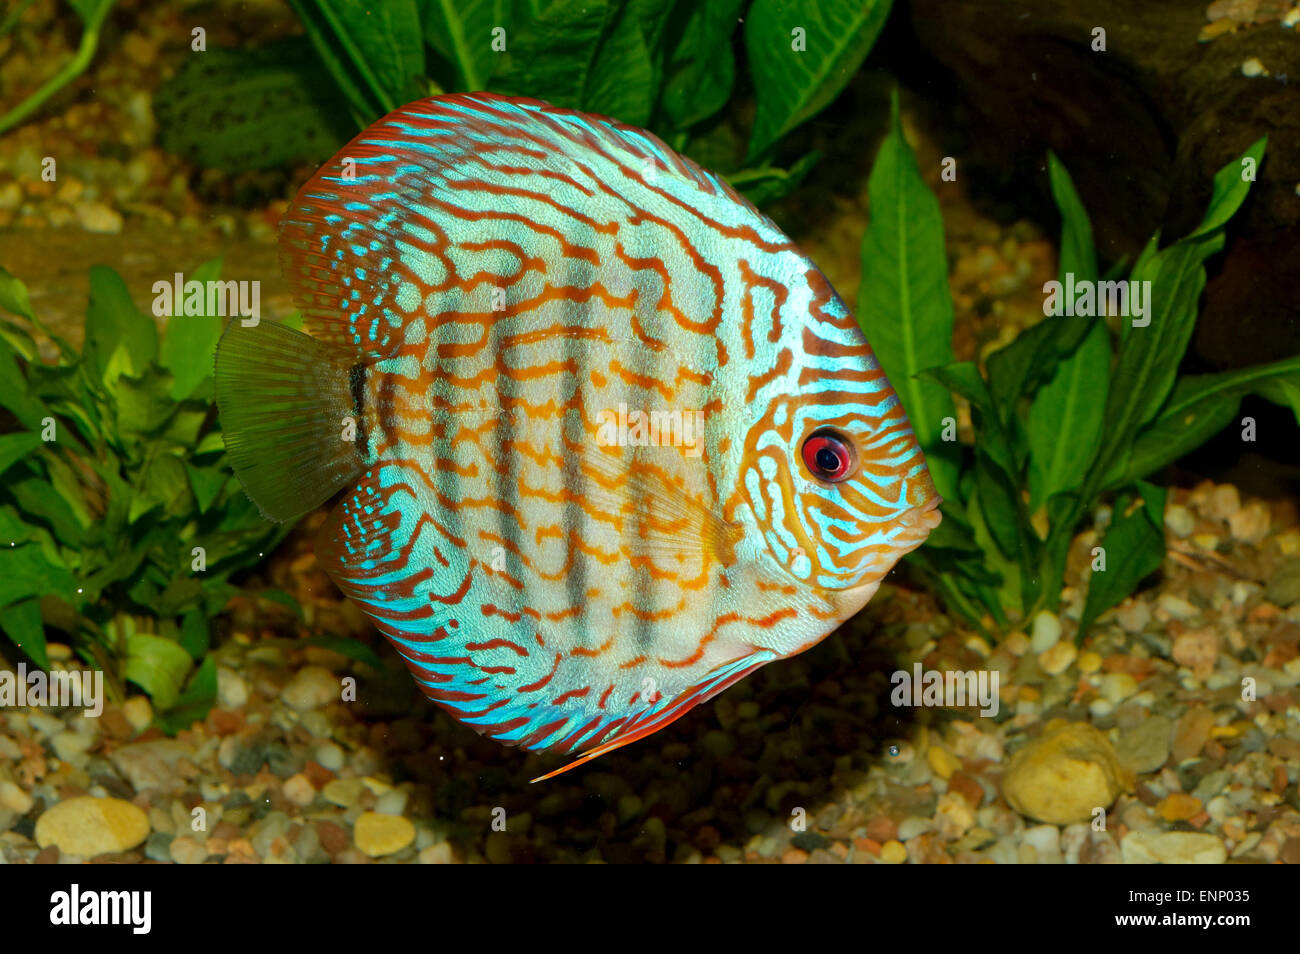 Nice blue discus fish in aquaraium. Stock Photo